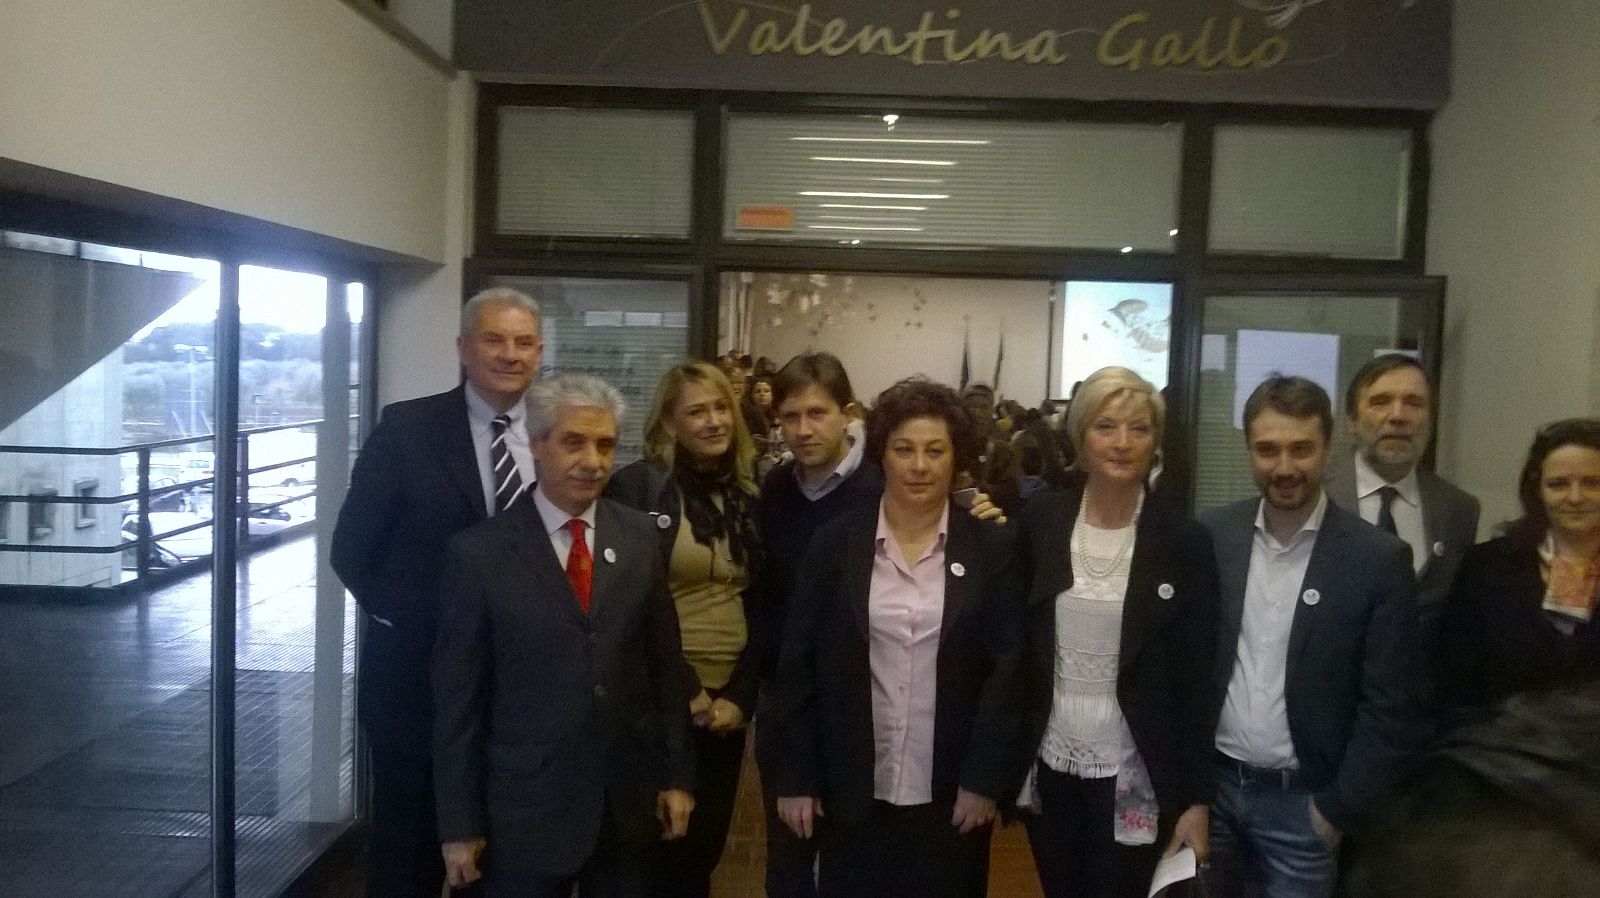 Cerimonia di intitolazione a Valentina Gallo dell'auditorium dell'istituto Calamandrei